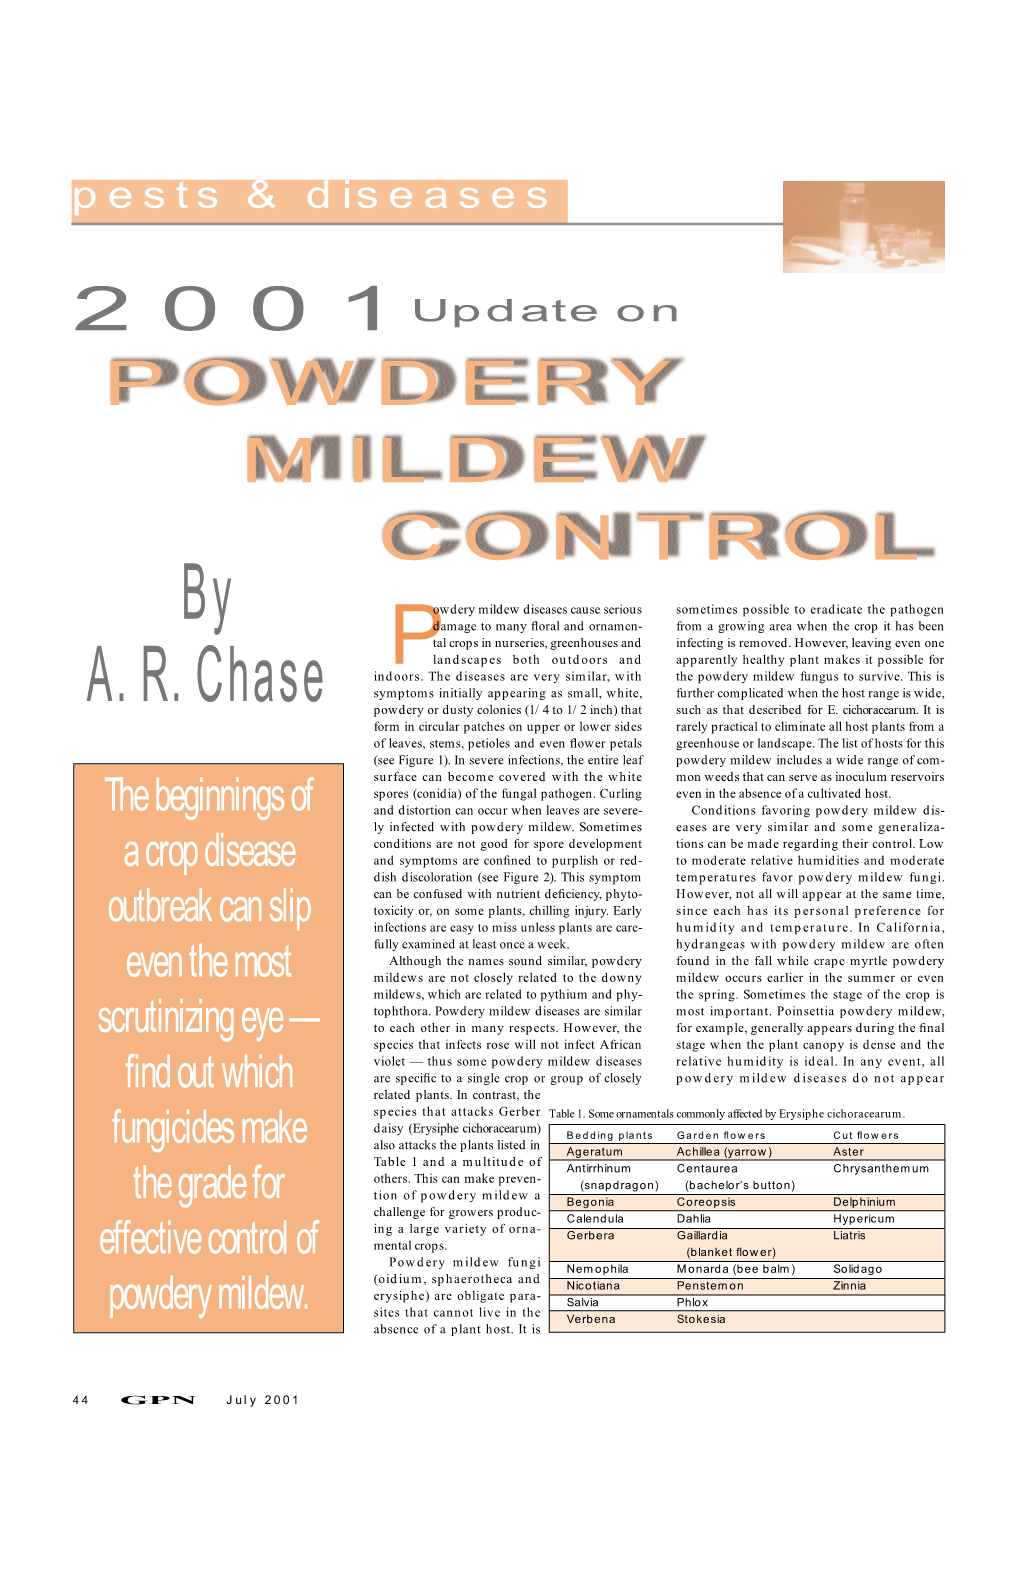 Powdery Mildew Control